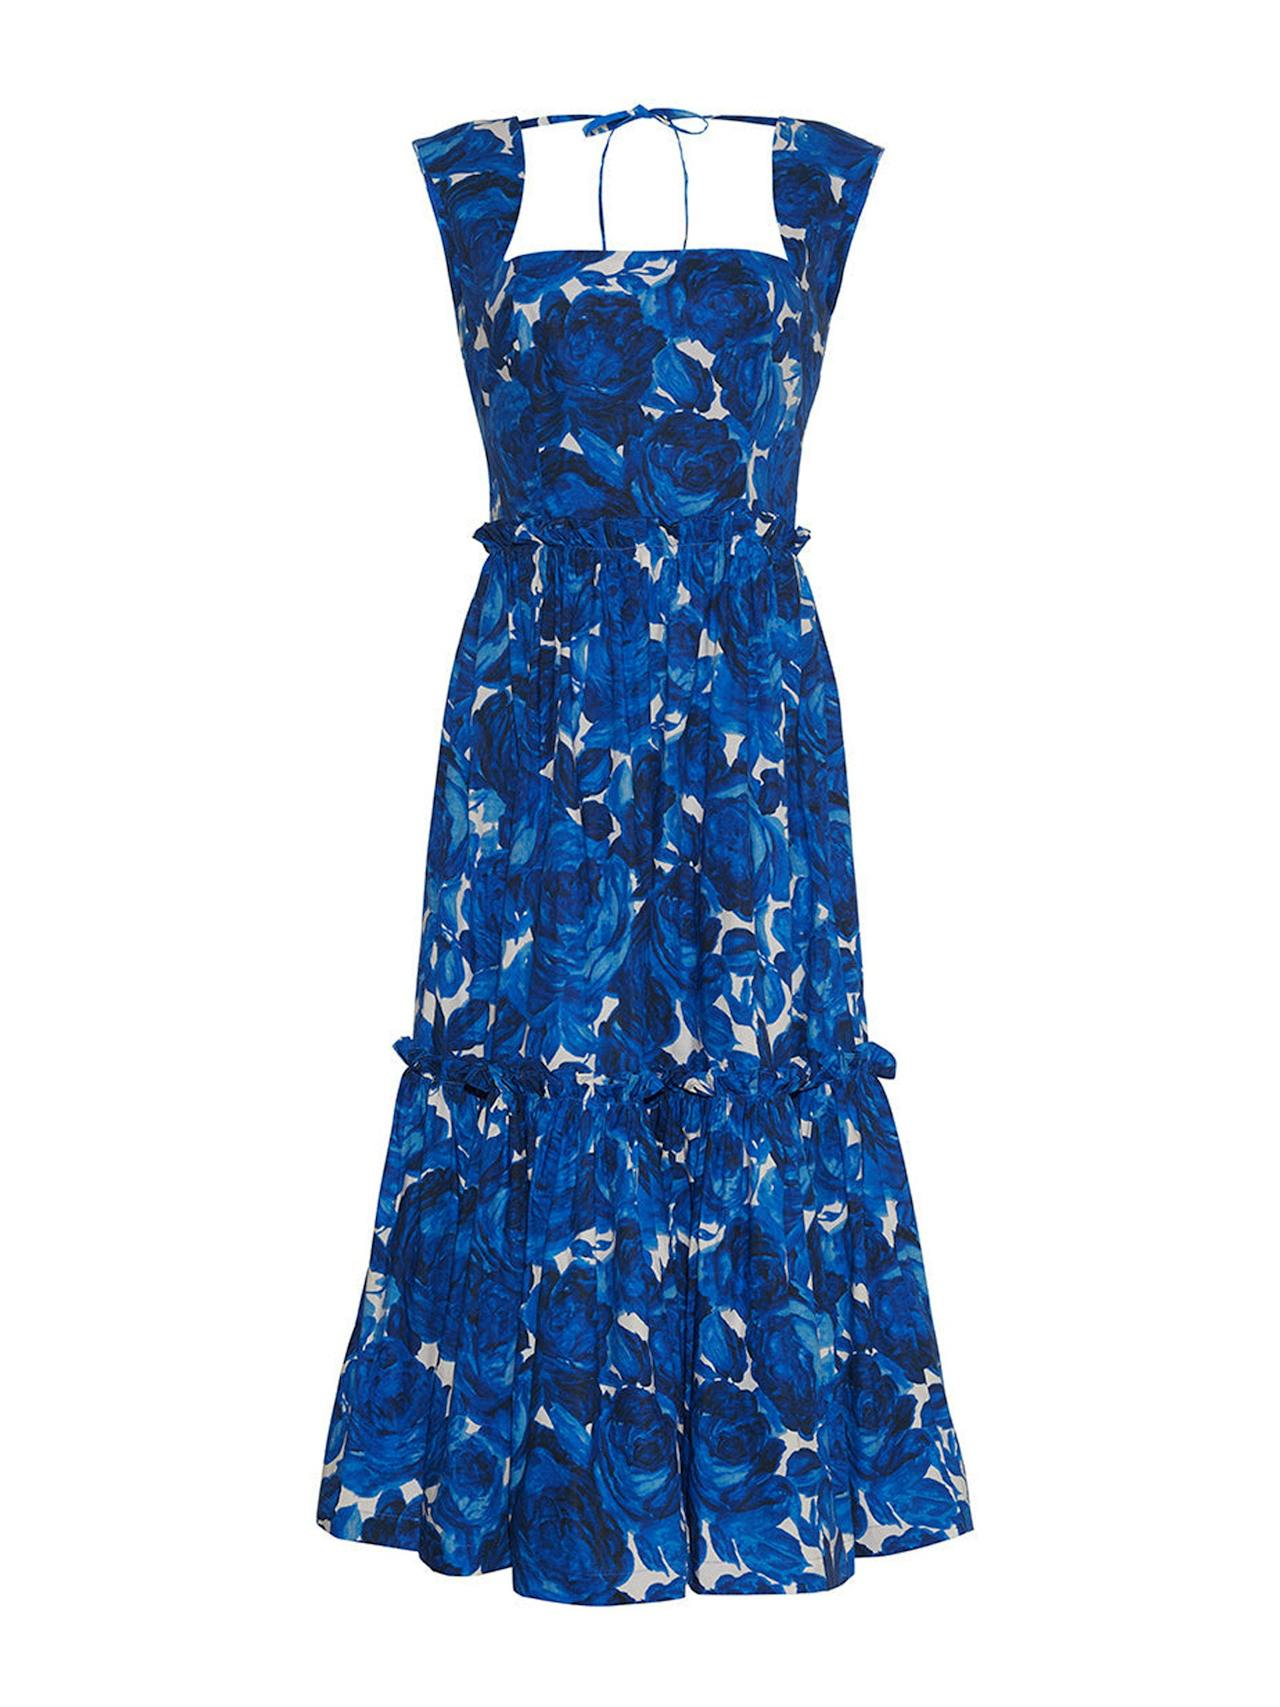 Floral garden blue Claire dress